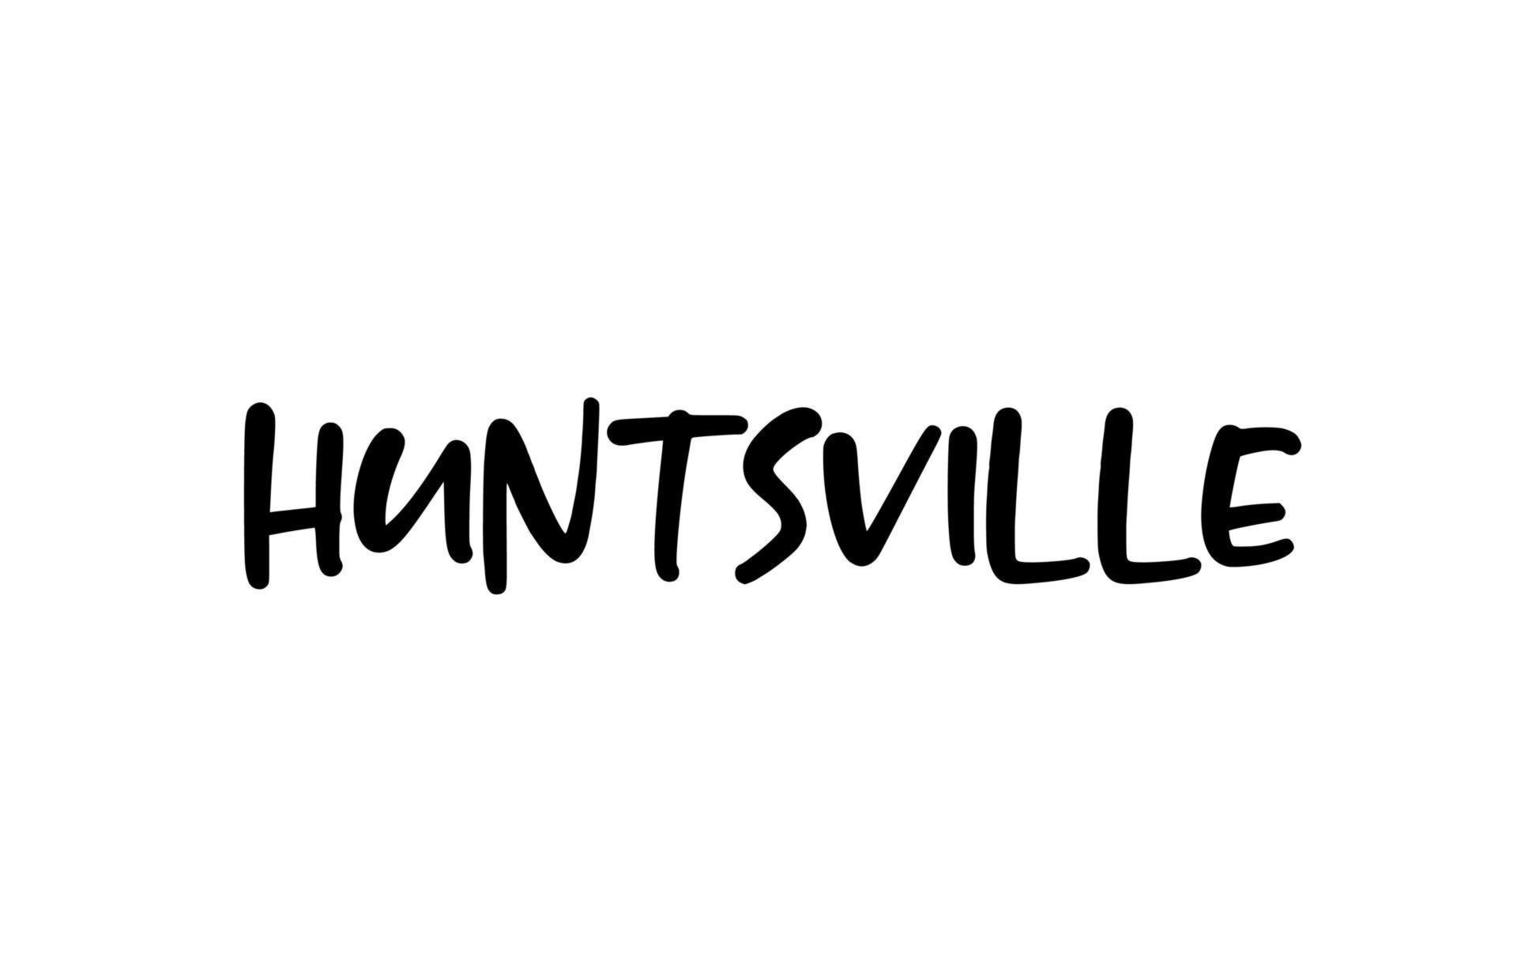 Huntsville città tipografia scritta a mano parola testo scritte a mano. testo di calligrafia moderna. colore nero vettore